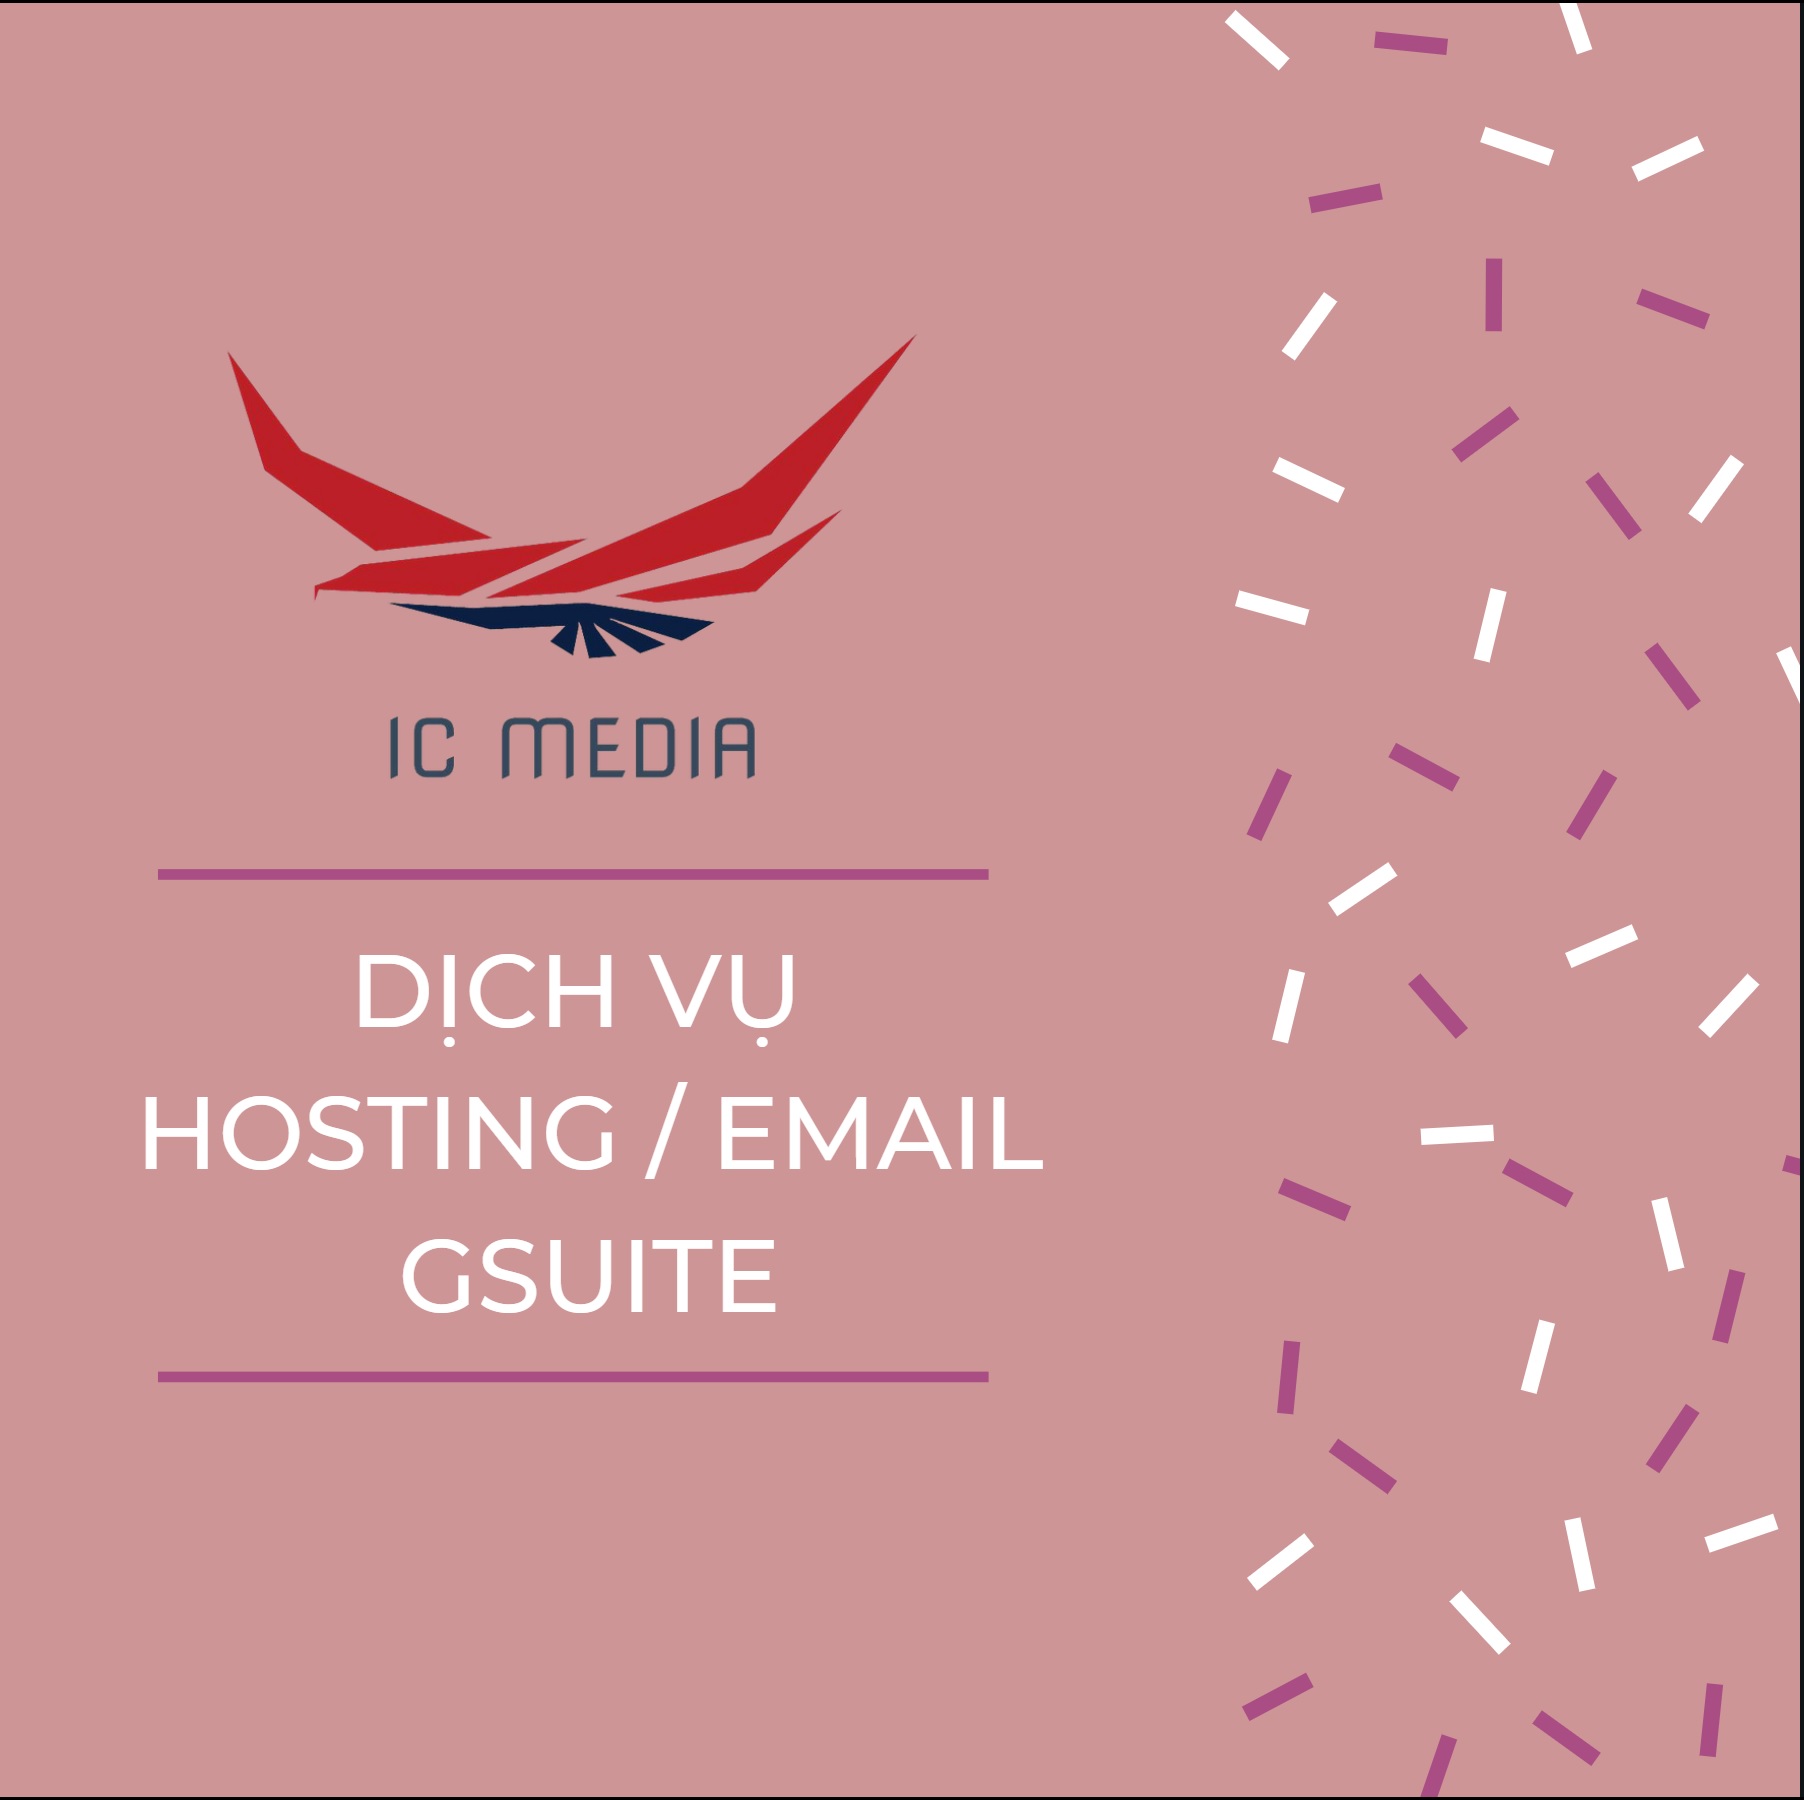 Hosting / Email Gsuite